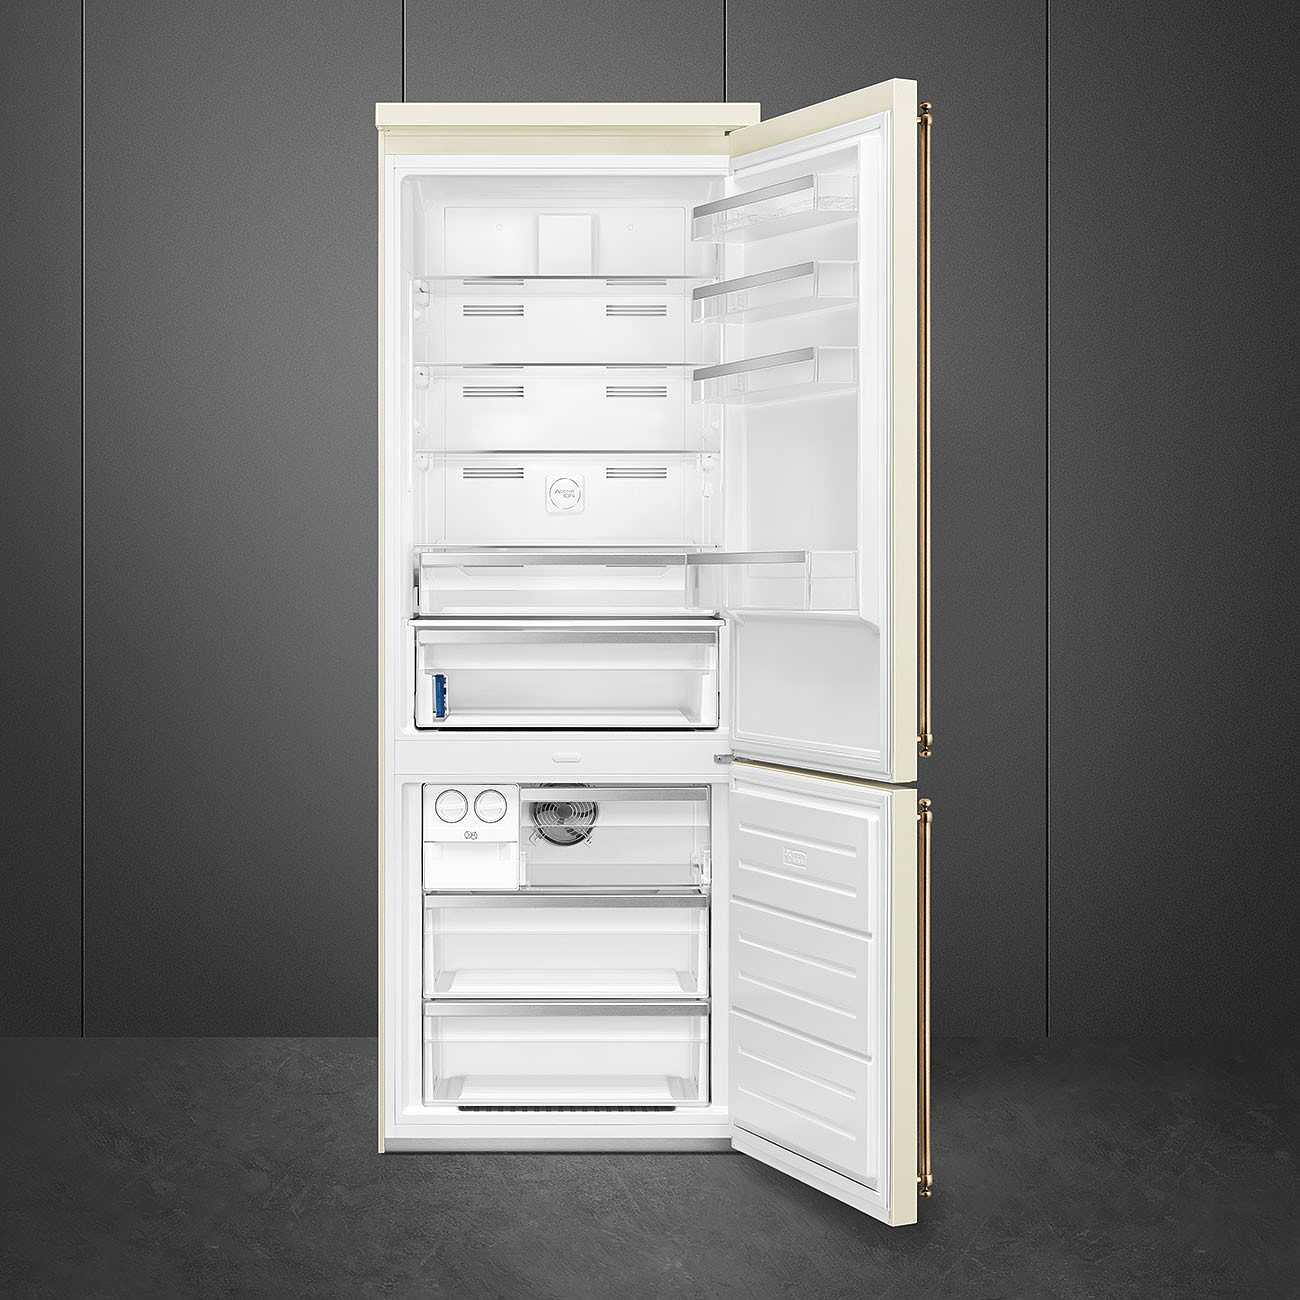 SMEG FA8005RPO5 Отдельностоящий холодильник, 70 см, петли справа, кремовый, фурнитура латунная